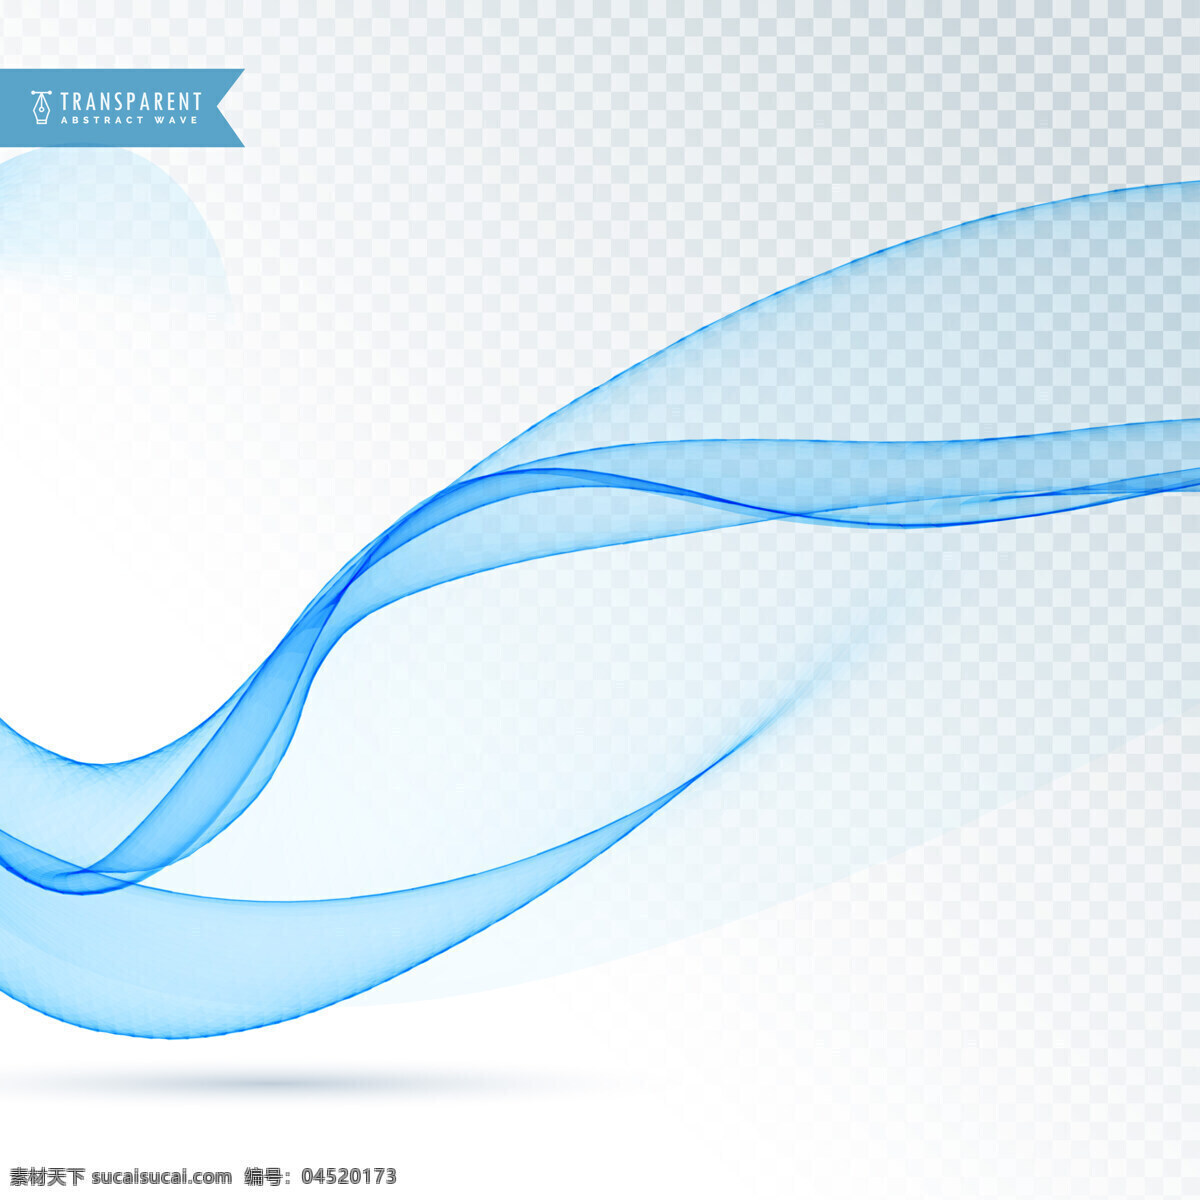 抽象 蓝色 动态 图形 背景 商业 线条 波浪 形状 烟雾 优雅 能量 漩涡 现代 效果 透明 抽象的形状 运动 柔软